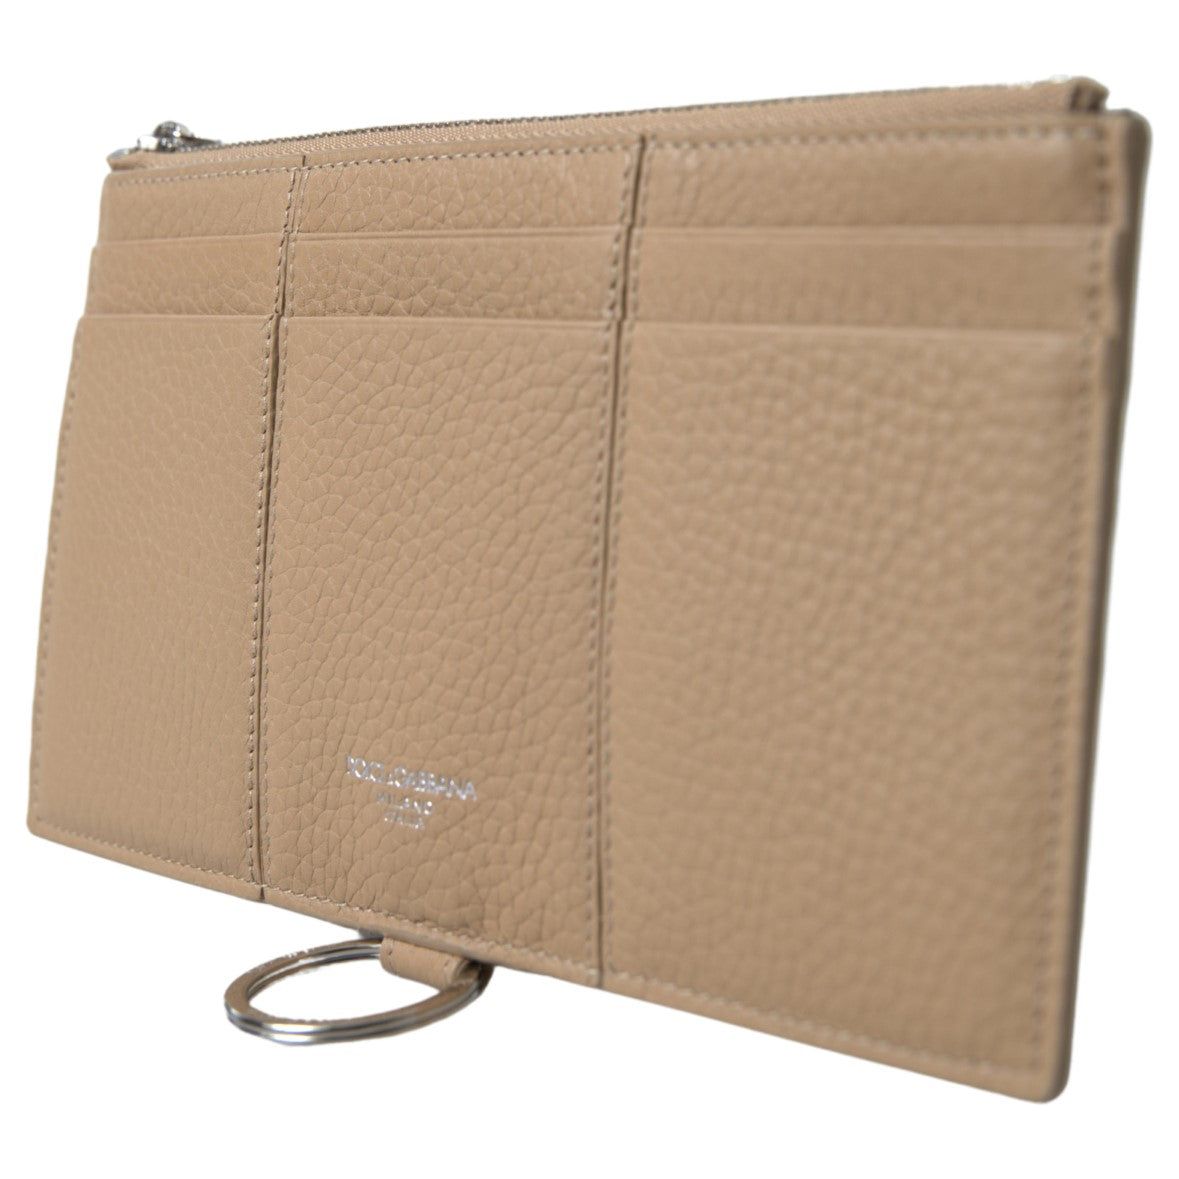 Dolce & Gabbana Elegant Beige Leather Wallet with Detachable Strap beige-leather-shoulder-cardholder-shoulder-strap-wallet 465A4541-Large-1c262dcf-2e2.jpg